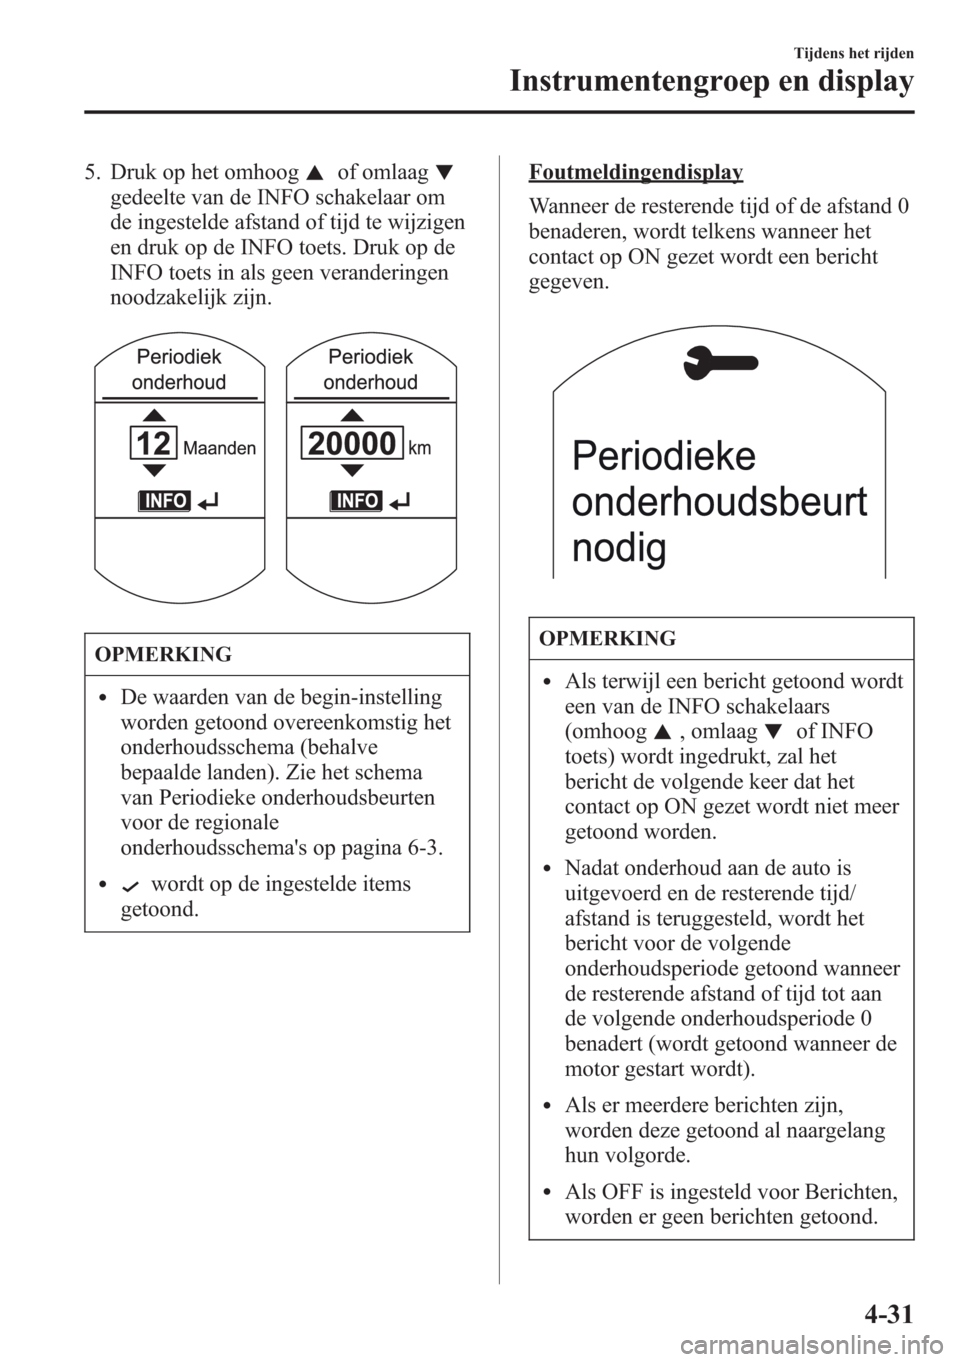 MAZDA MODEL CX-5 2013  Handleiding (in Dutch) 5. Druk op het omhoogof omlaag
gedeelte van de INFO schakelaar om
de ingestelde afstand of tijd te wijzigen
en druk op de INFO toets. Druk op de
INFO toets in als geen veranderingen
noodzakelijk zijn.